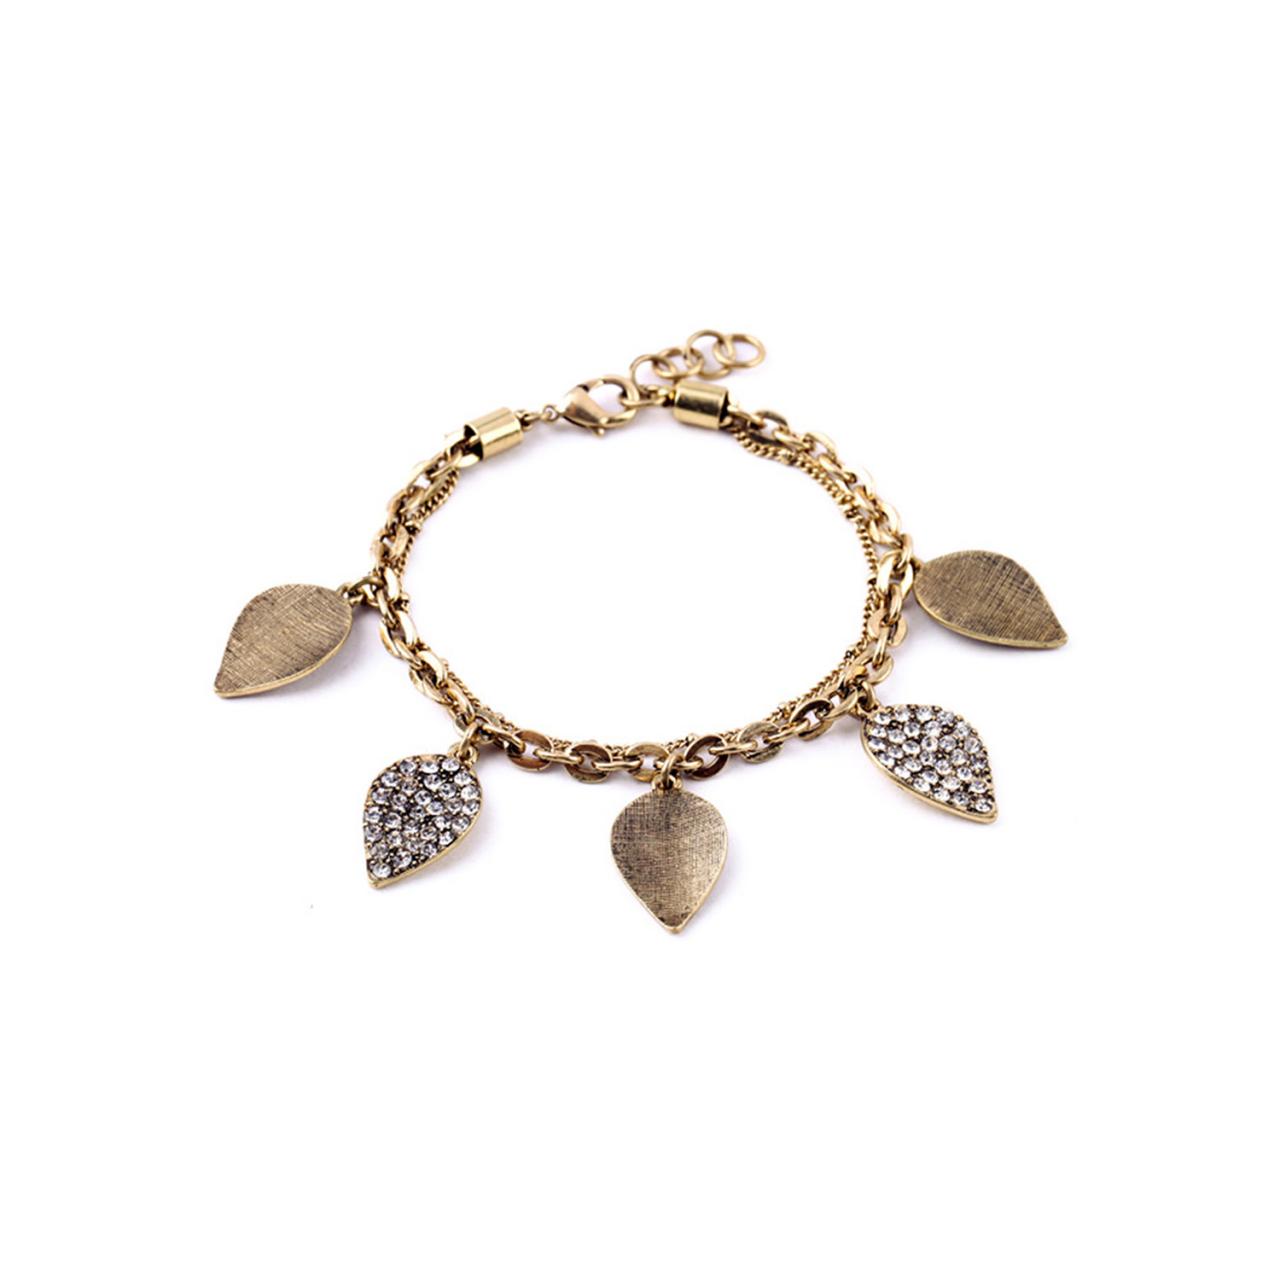 Leaf Bracelet / Chain Bracelet / Gold Bracelet / Fall Leaves / Gold Leaf Bracelet / Gold Chain / Multichain / Charm Bracelet / Glass Stone